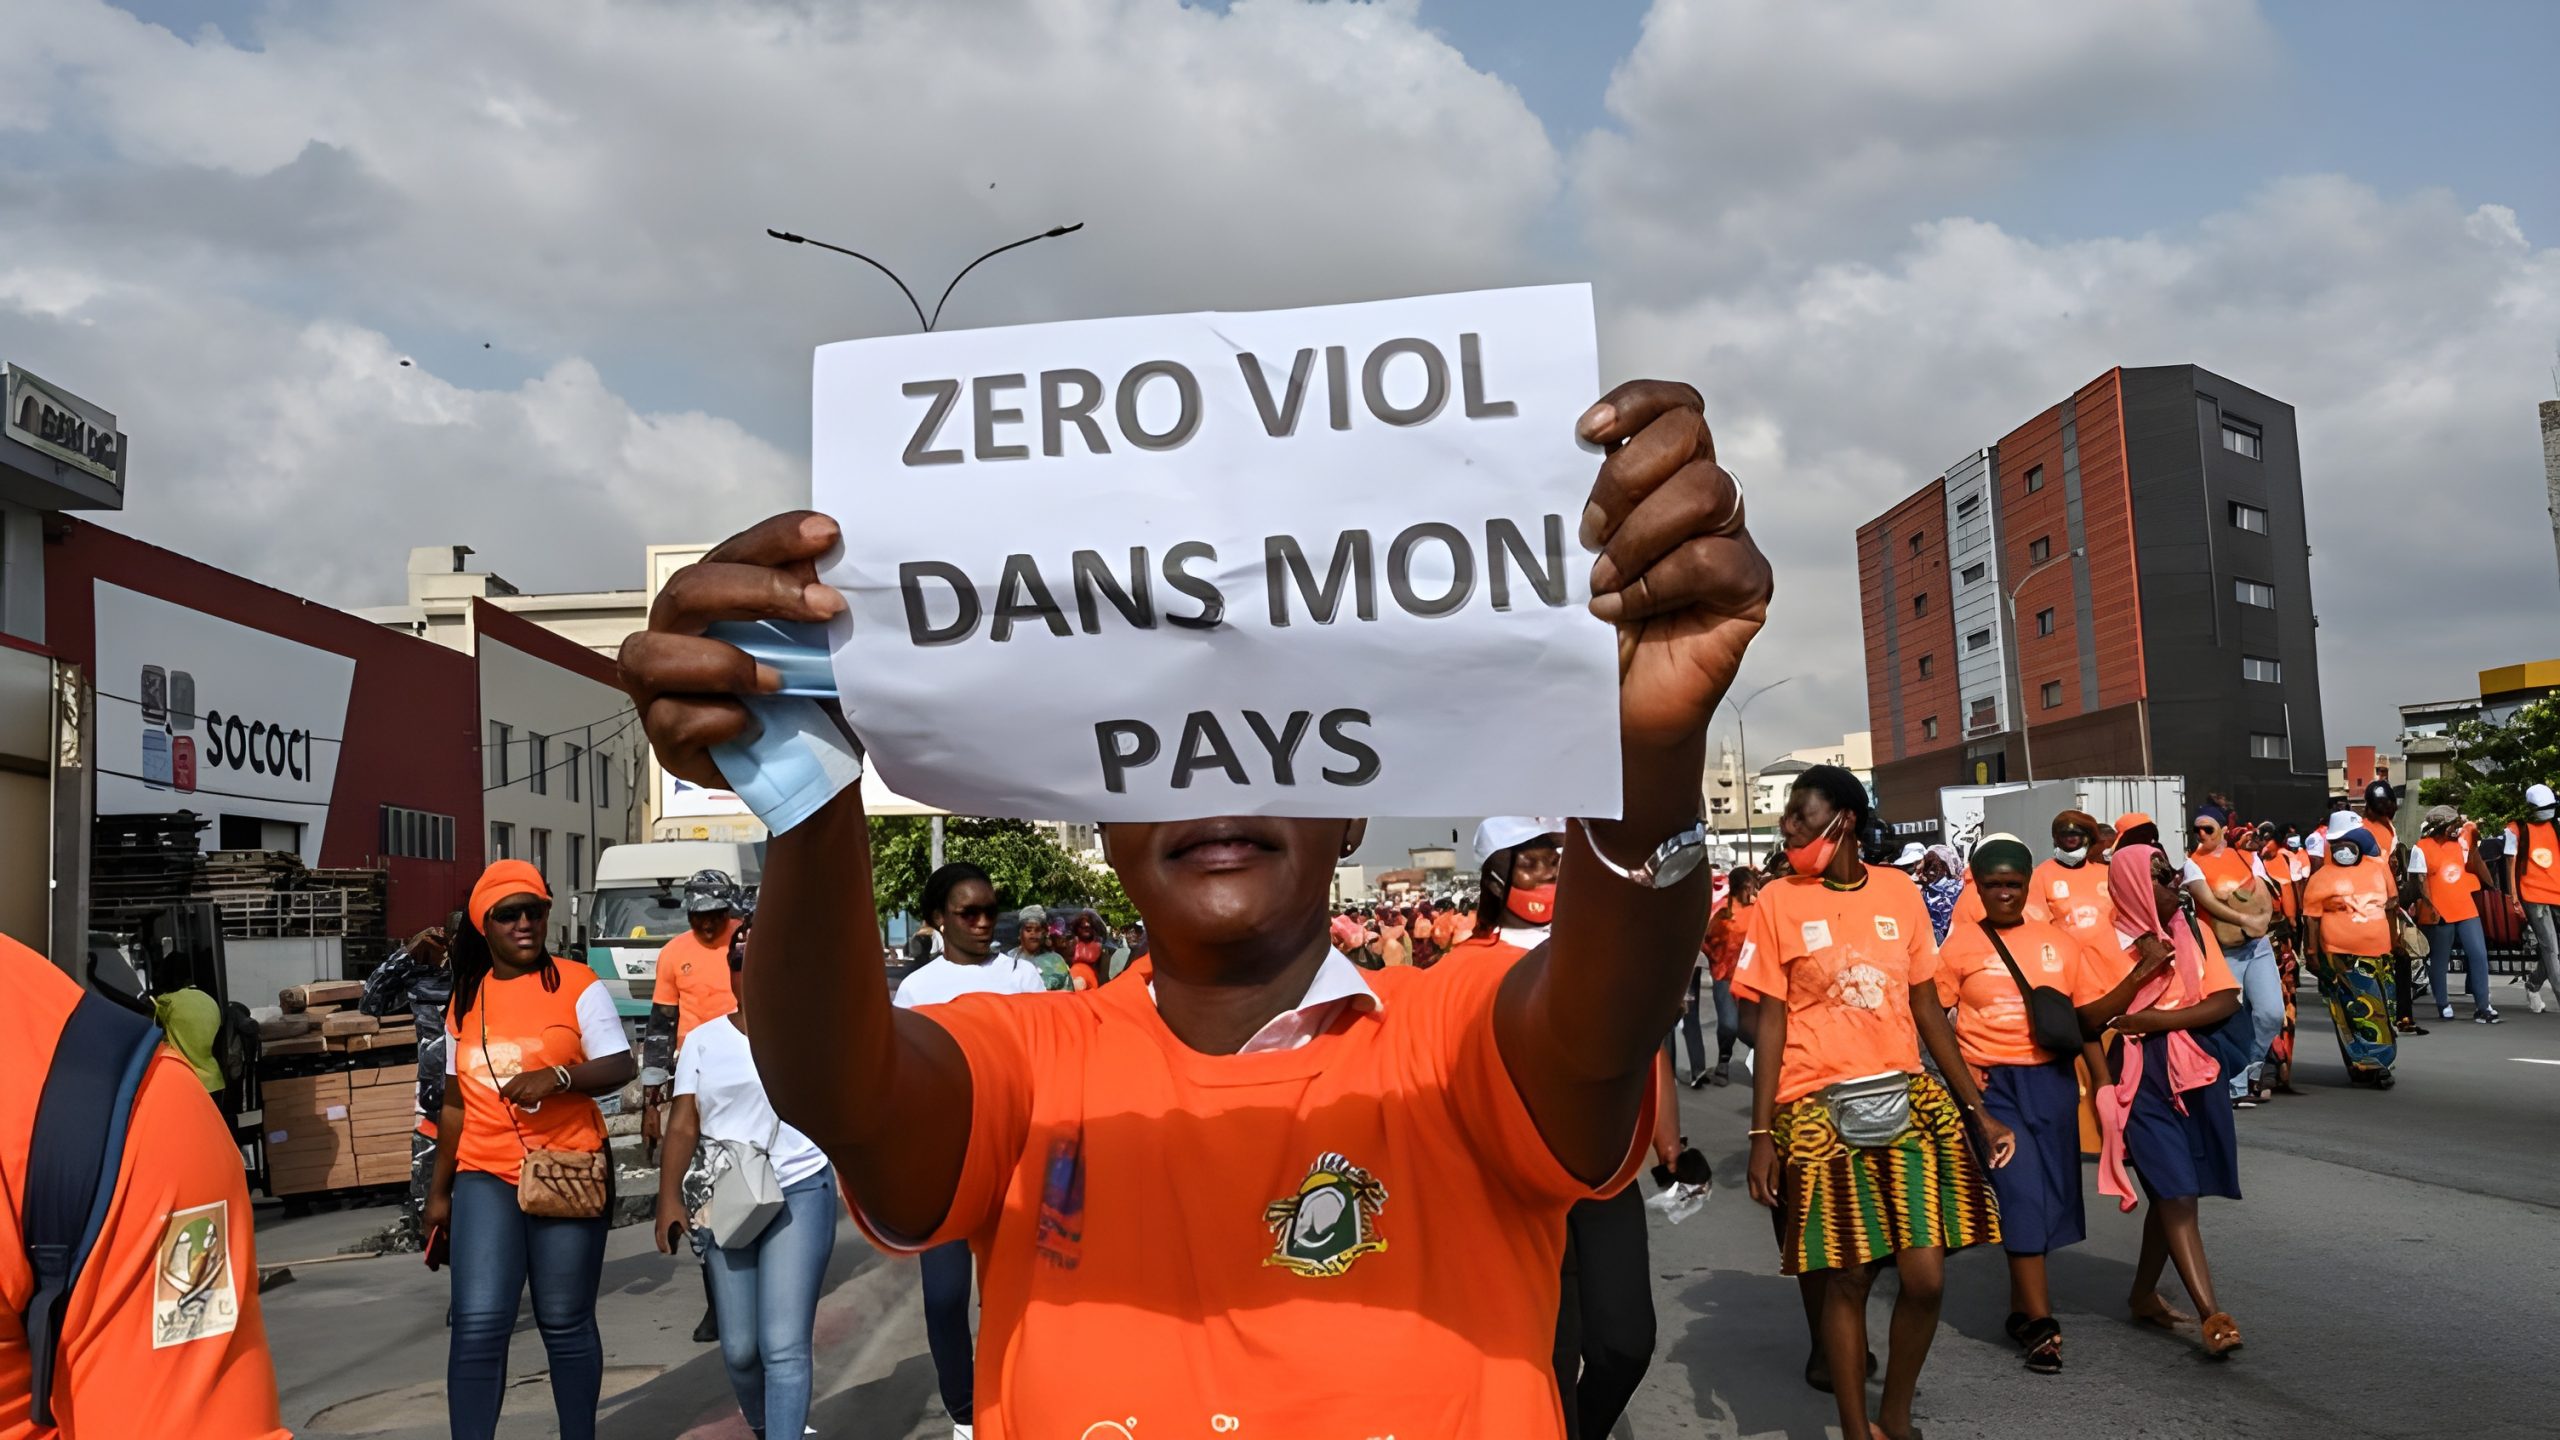 Loi contre les violences domestiques, viol et violences sexuelles autres que domestiques en Côte d’Ivoire : tout savoir